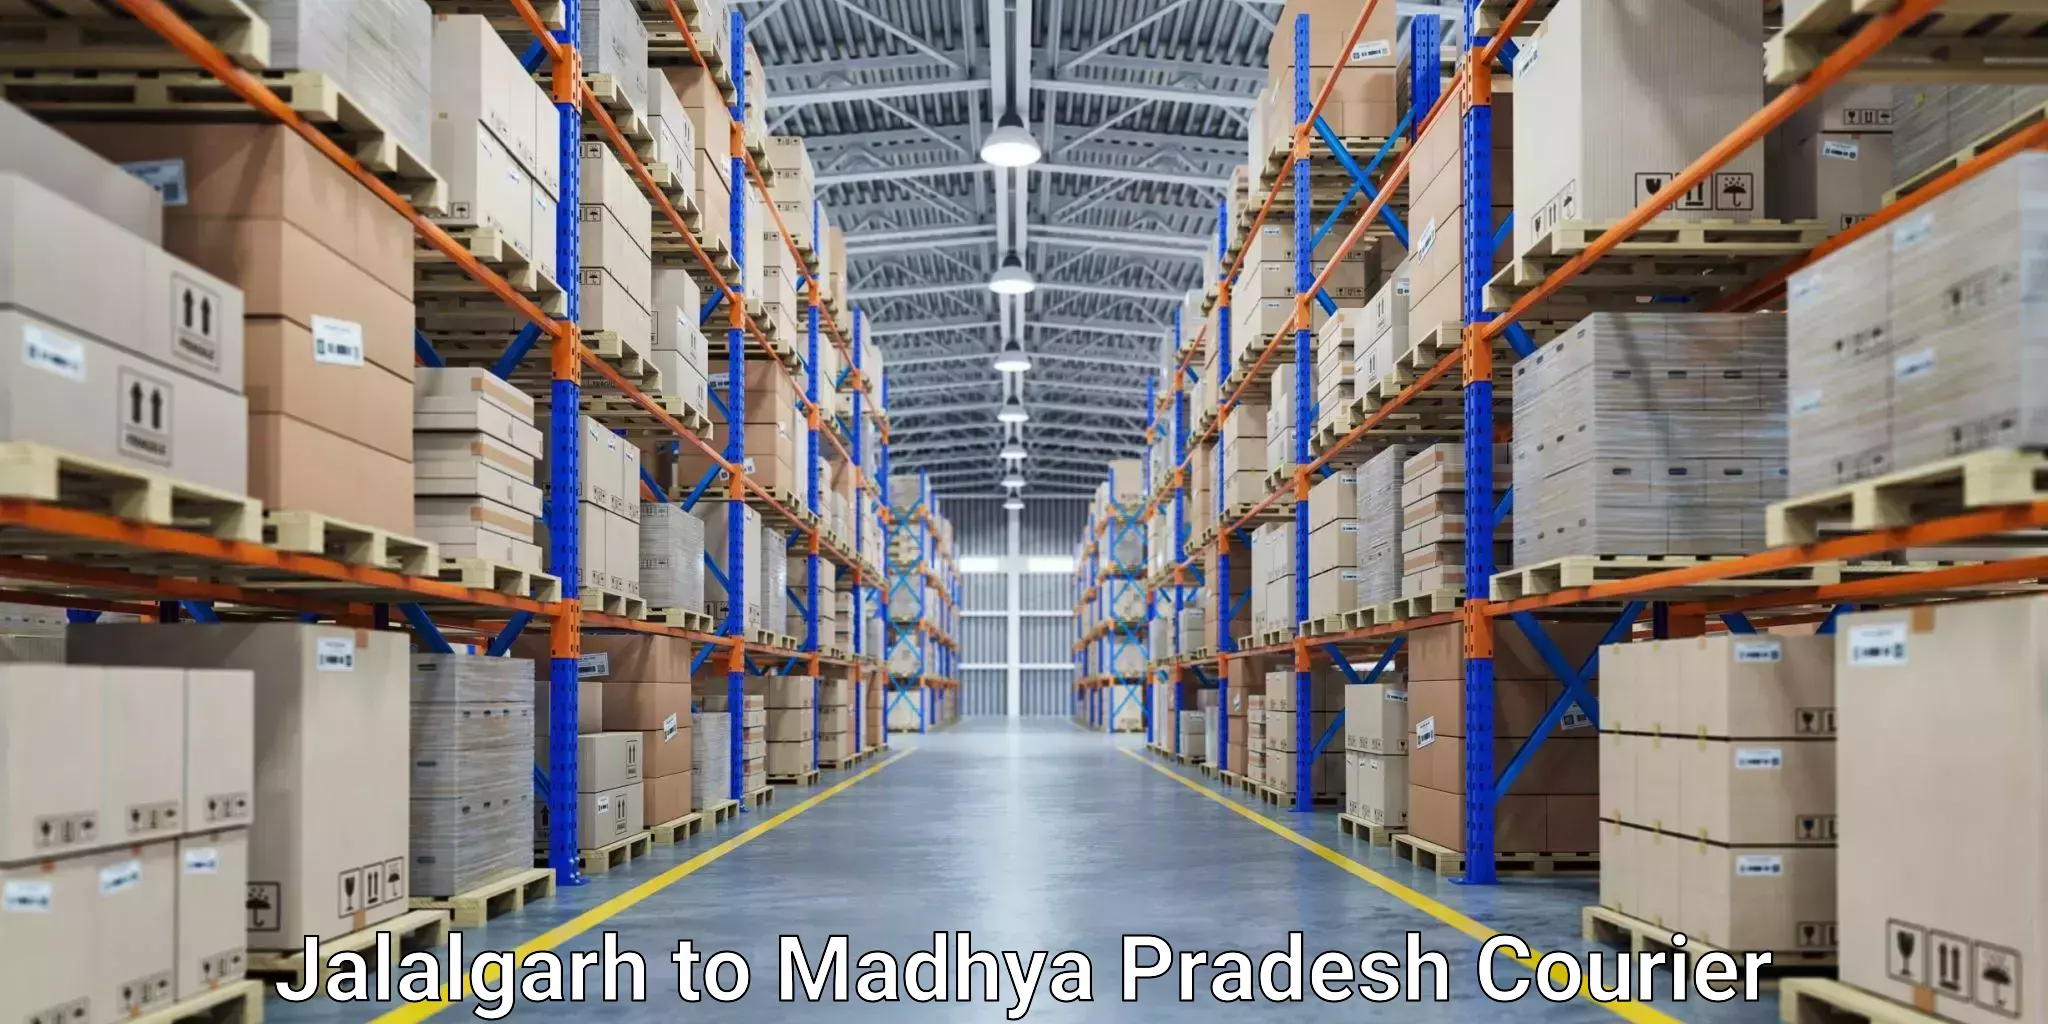 Efficient order fulfillment Jalalgarh to Madhya Pradesh